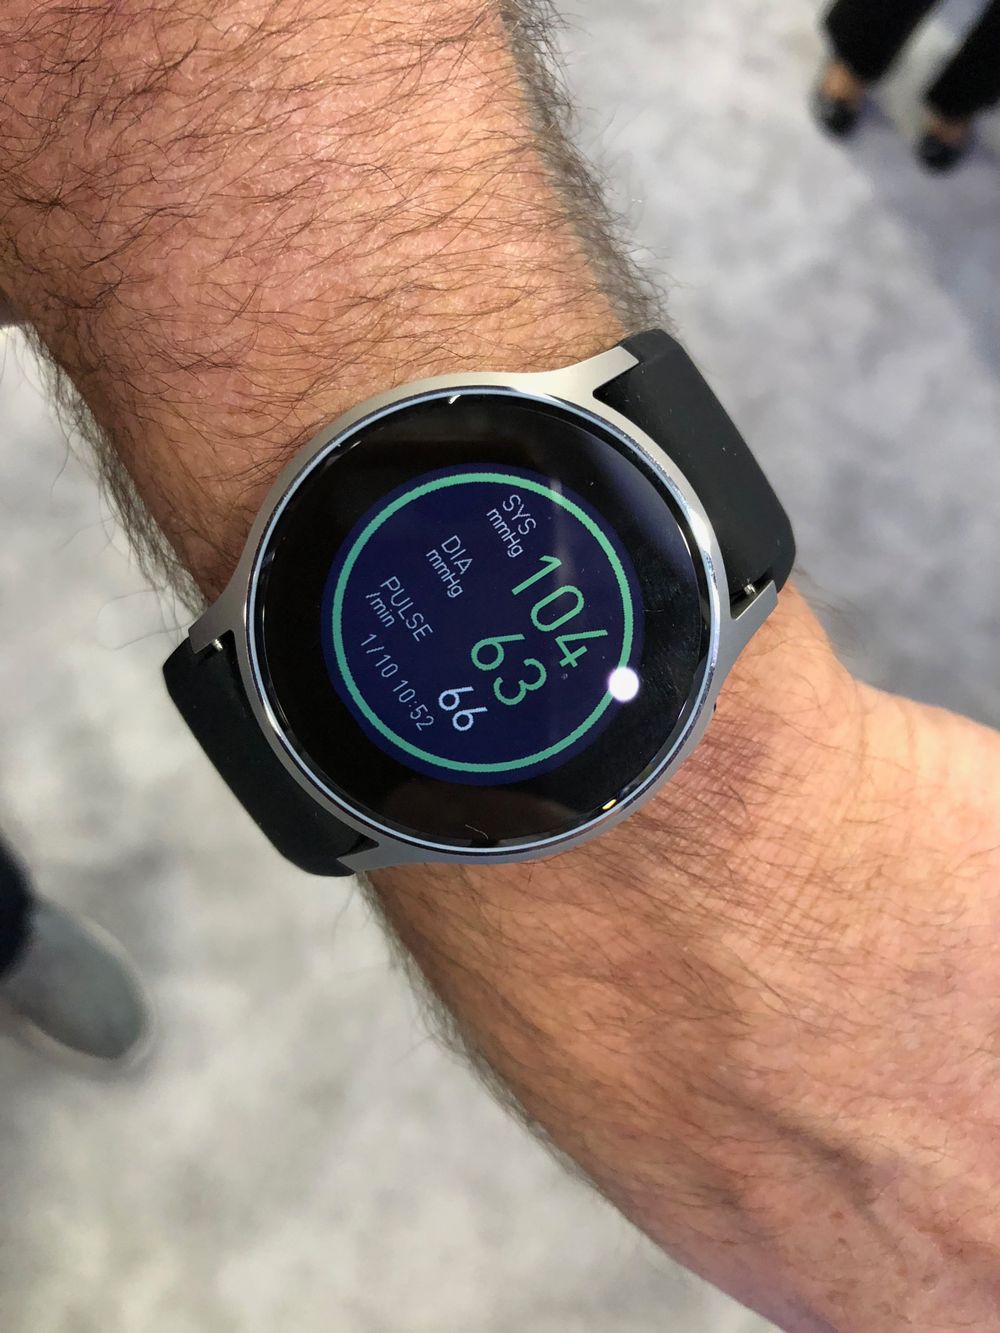 Smarte klokker er det et vell av. Noe som er spesielt spennende er klokker som måler blodtrykk. Som her fra Omron, som lover lansering om ikke lenge - til en pris langt lavere enn Apple Watch.